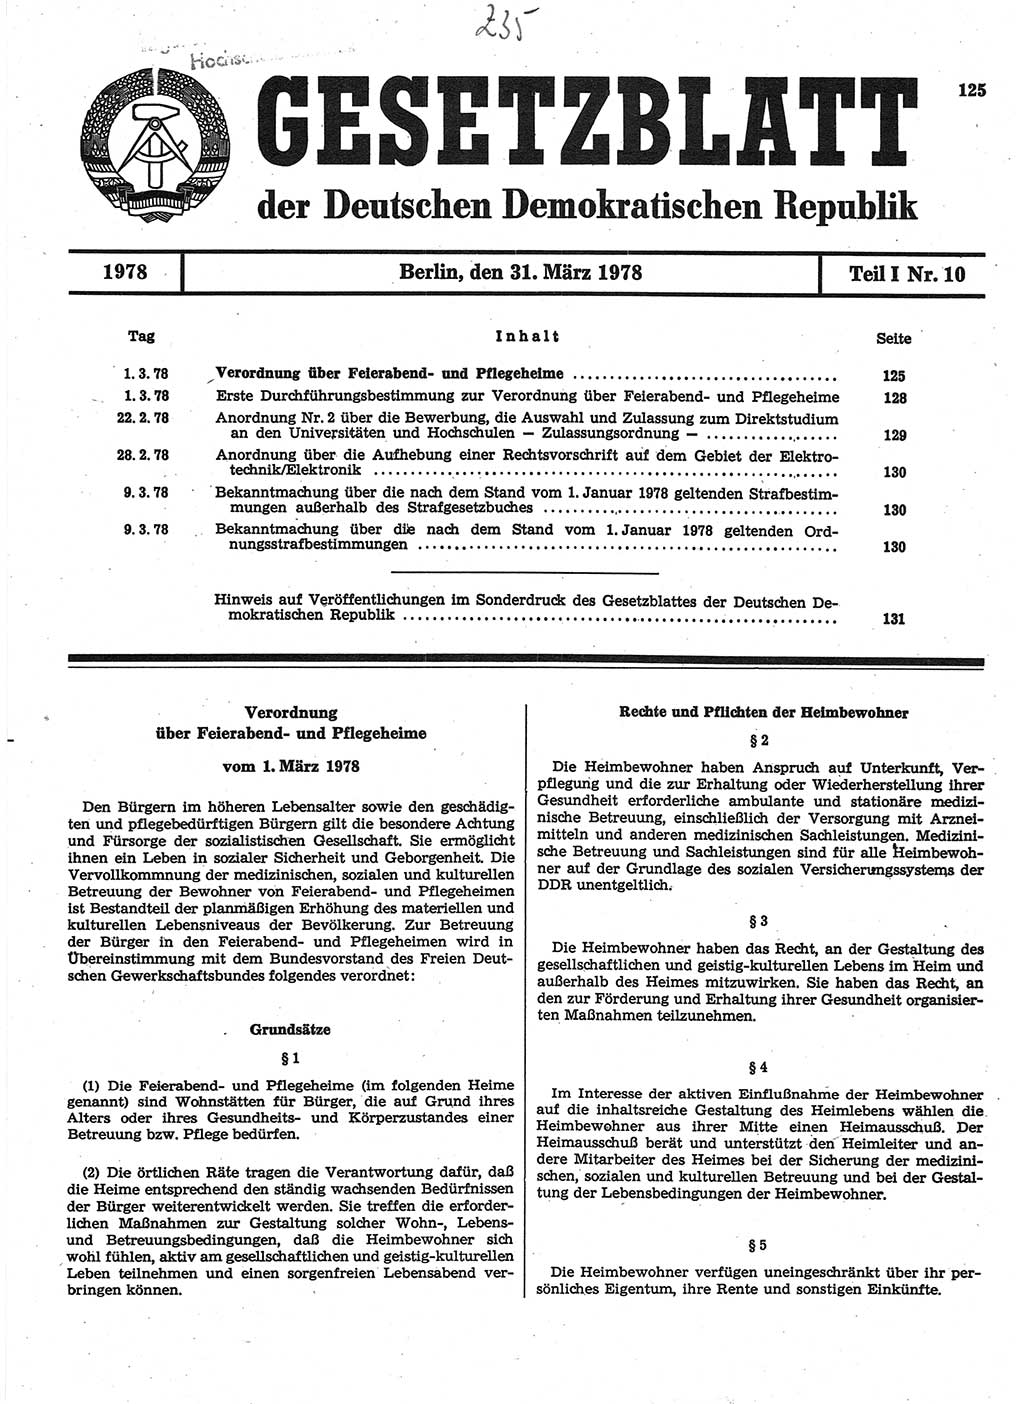 Gesetzblatt (GBl.) der Deutschen Demokratischen Republik (DDR) Teil Ⅰ 1978, Seite 125 (GBl. DDR Ⅰ 1978, S. 125)